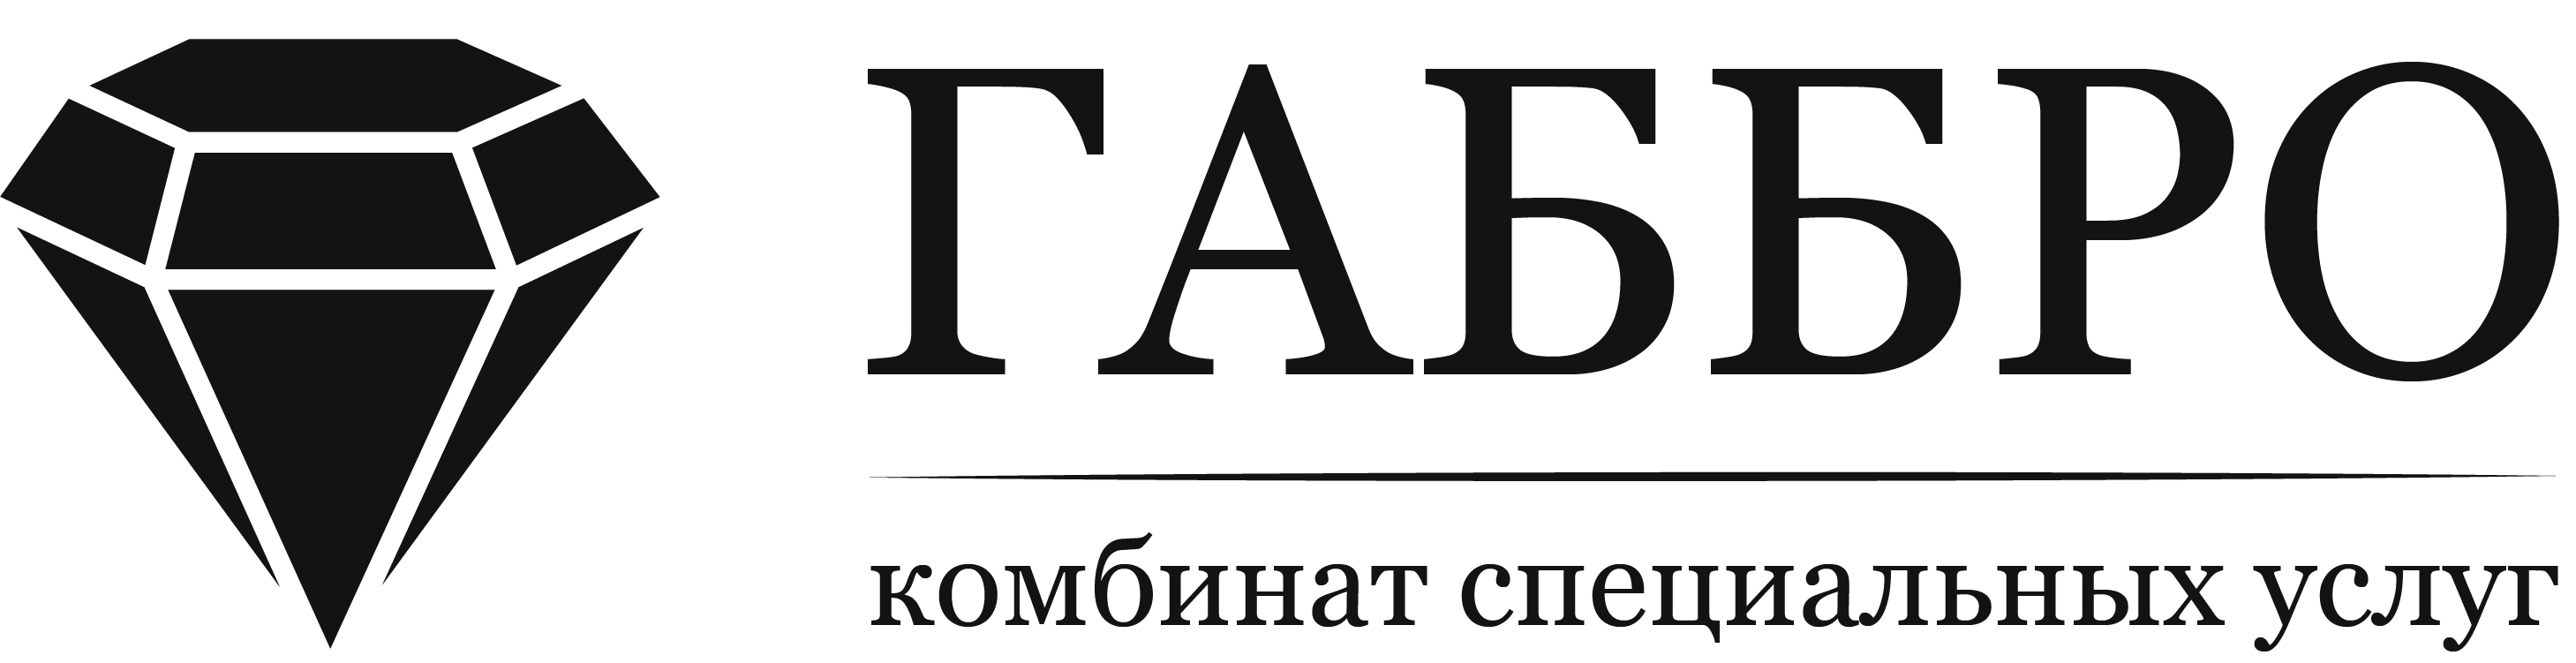  Изготовление и установка памятников в Омске и области - ООО КСУ «Габбро»